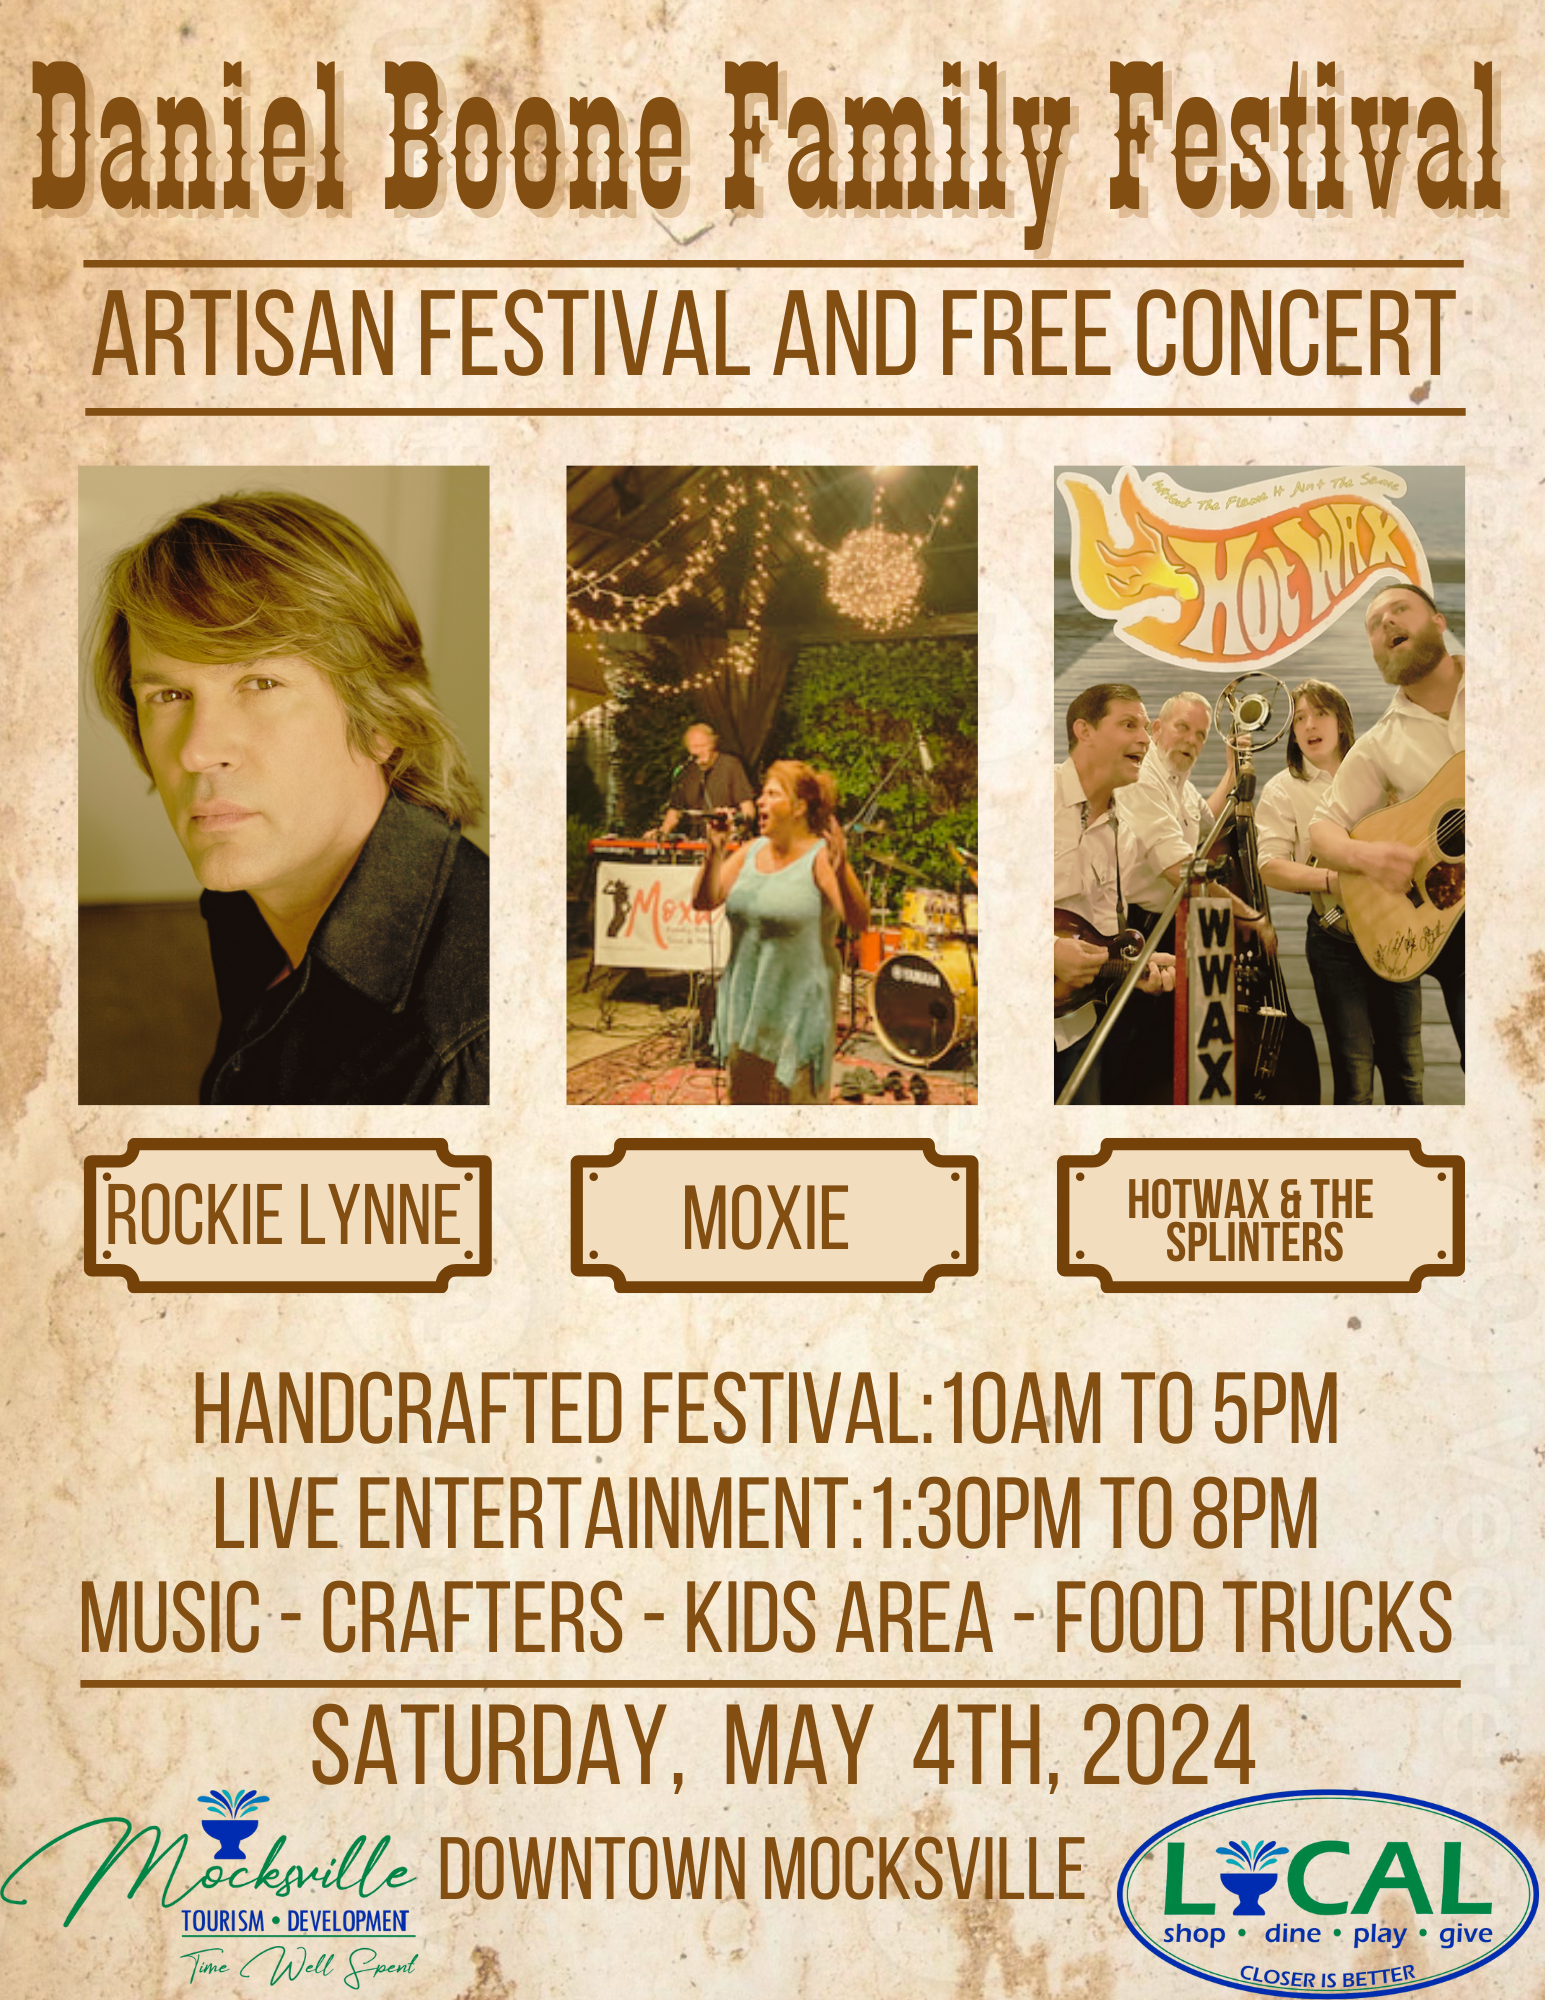 Daniel Boone Family Festival Poster for 2024 